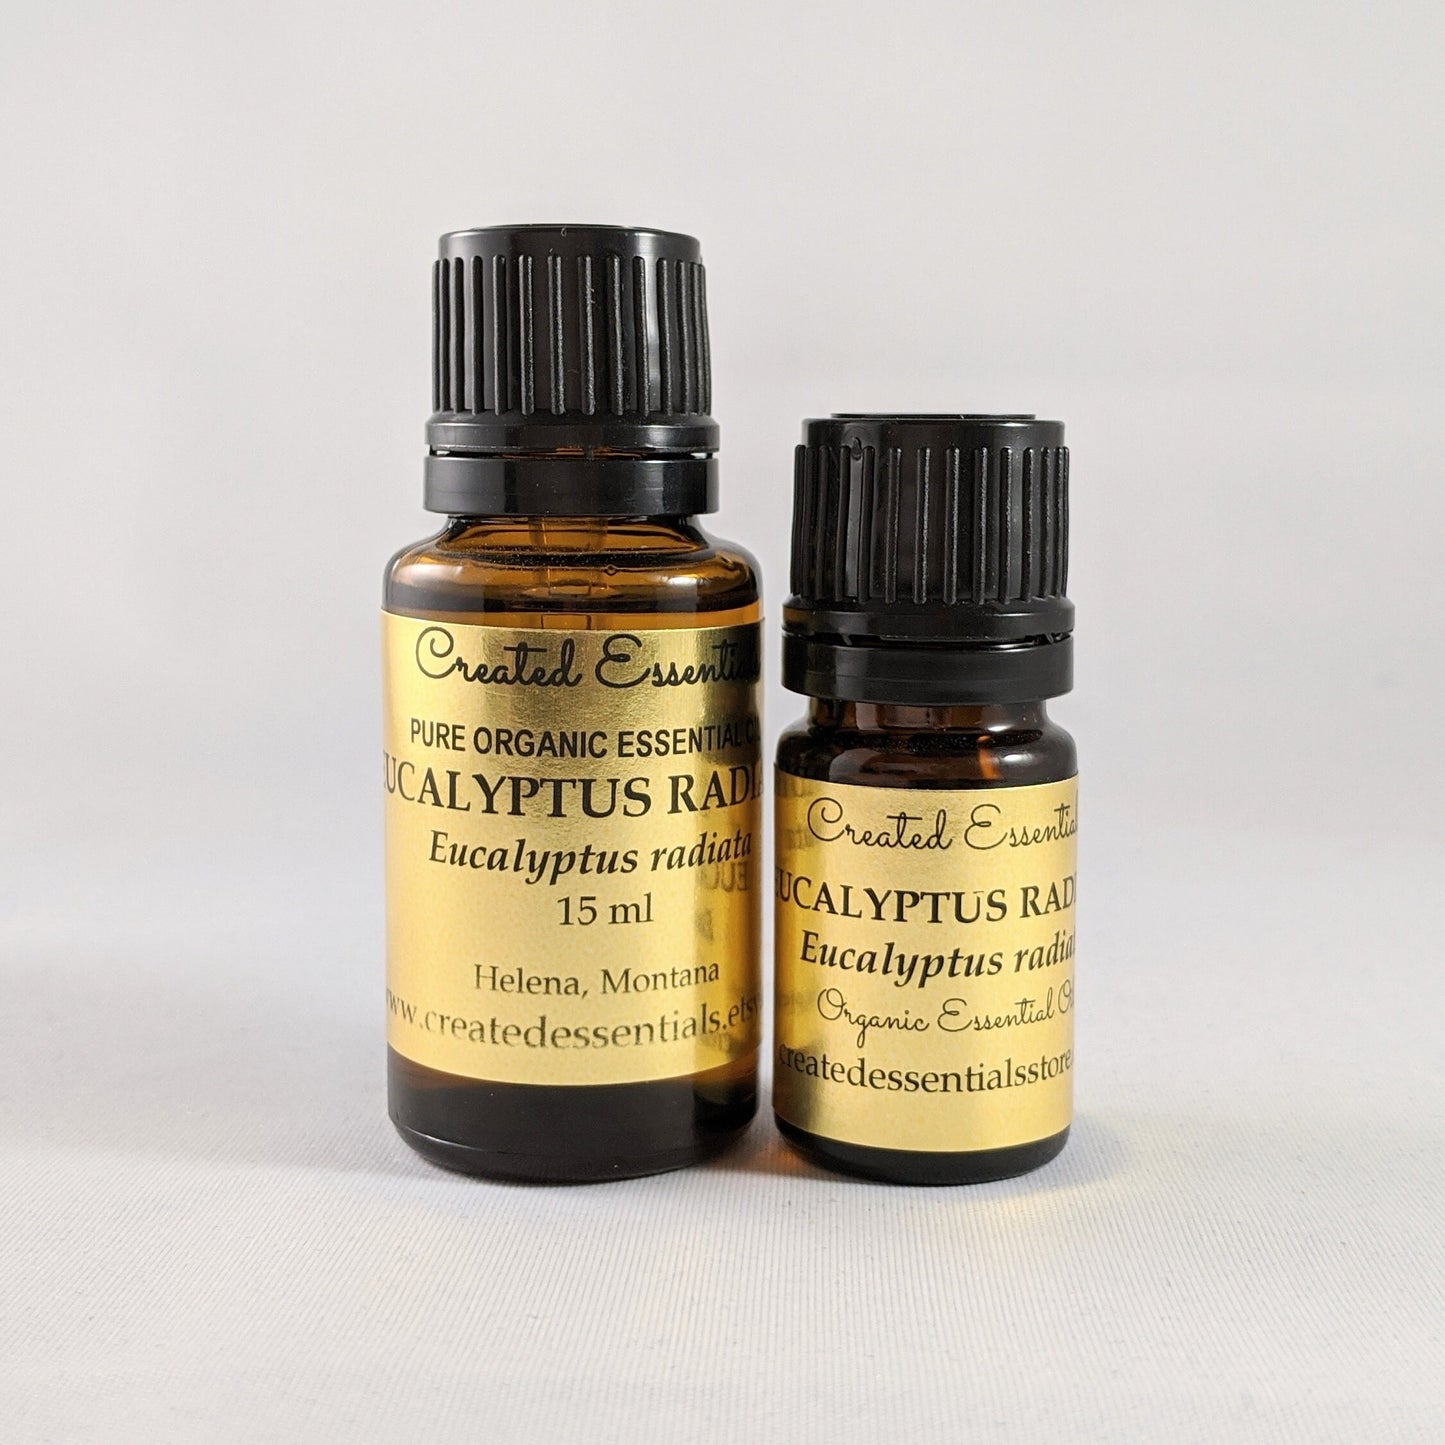 Eucalyptus Radiata Essential Oil | Organic Essential Oil Eucalyptus Radiata | 100% Pure Essential Oil | Therapeutic Essential Oil Eucalyptus